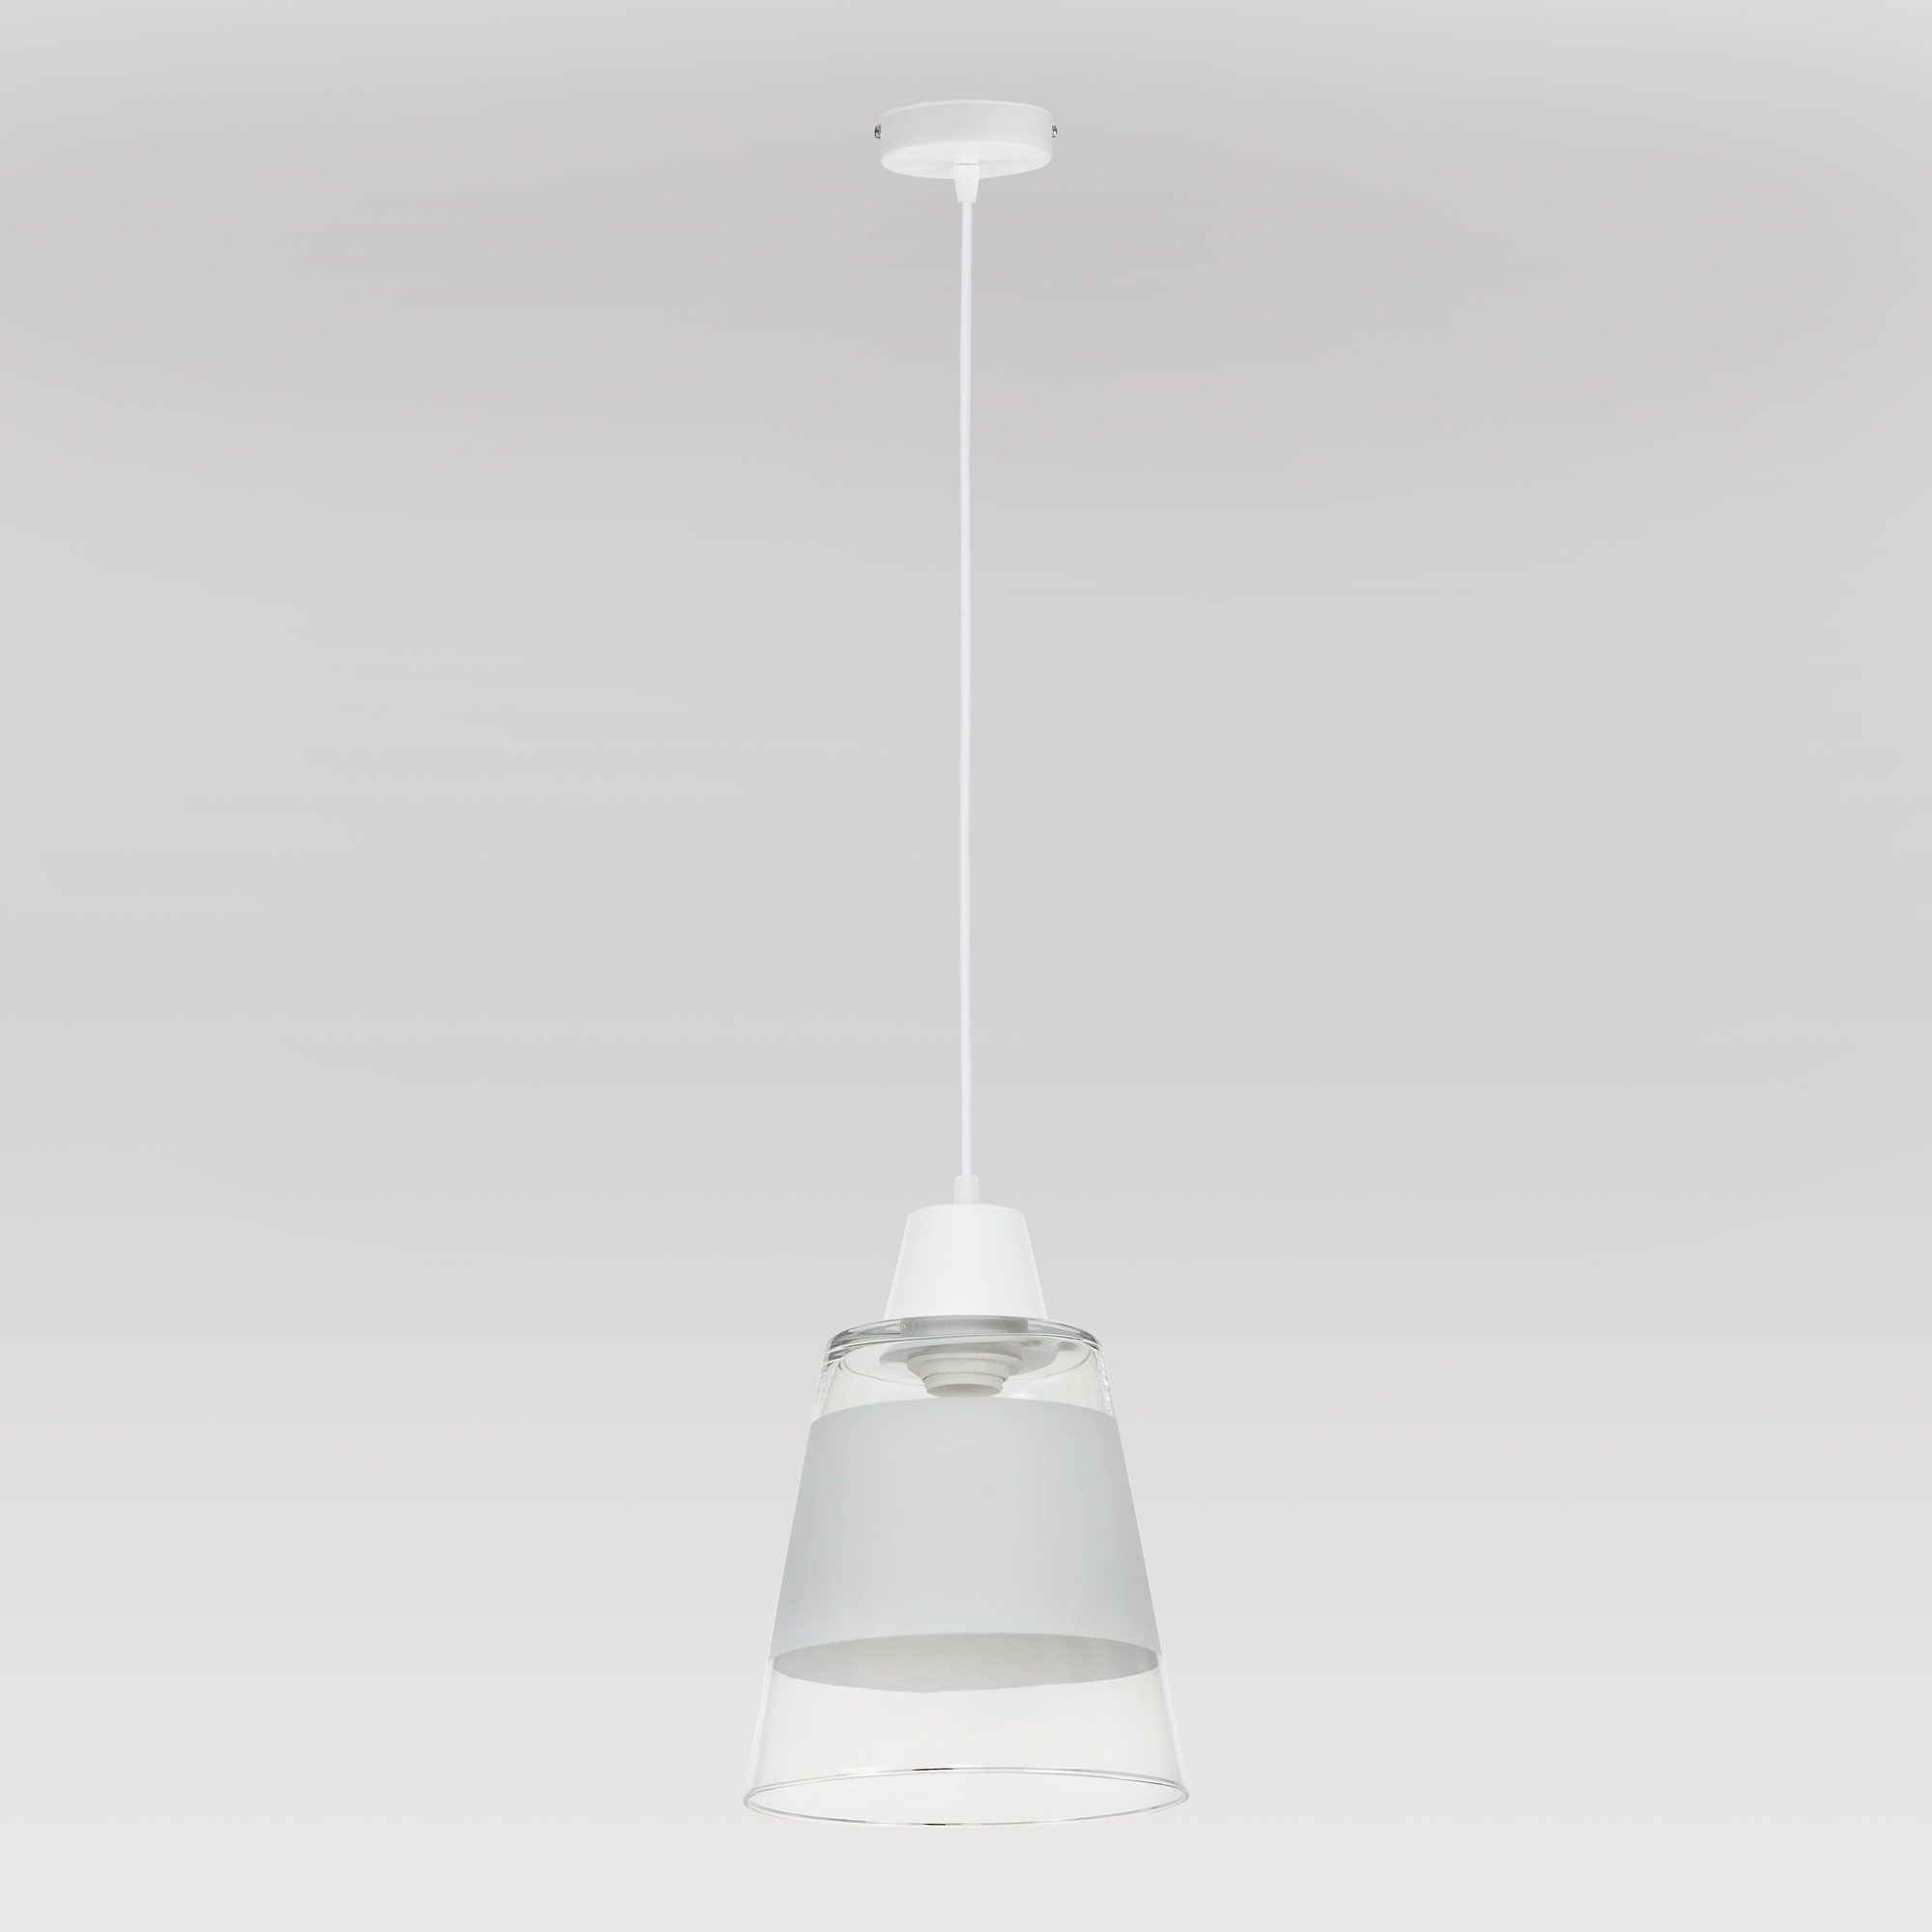 Белый подвесной светильник со стеклянным плафоном TK Lighting Trick 939 Trick. Фото 2